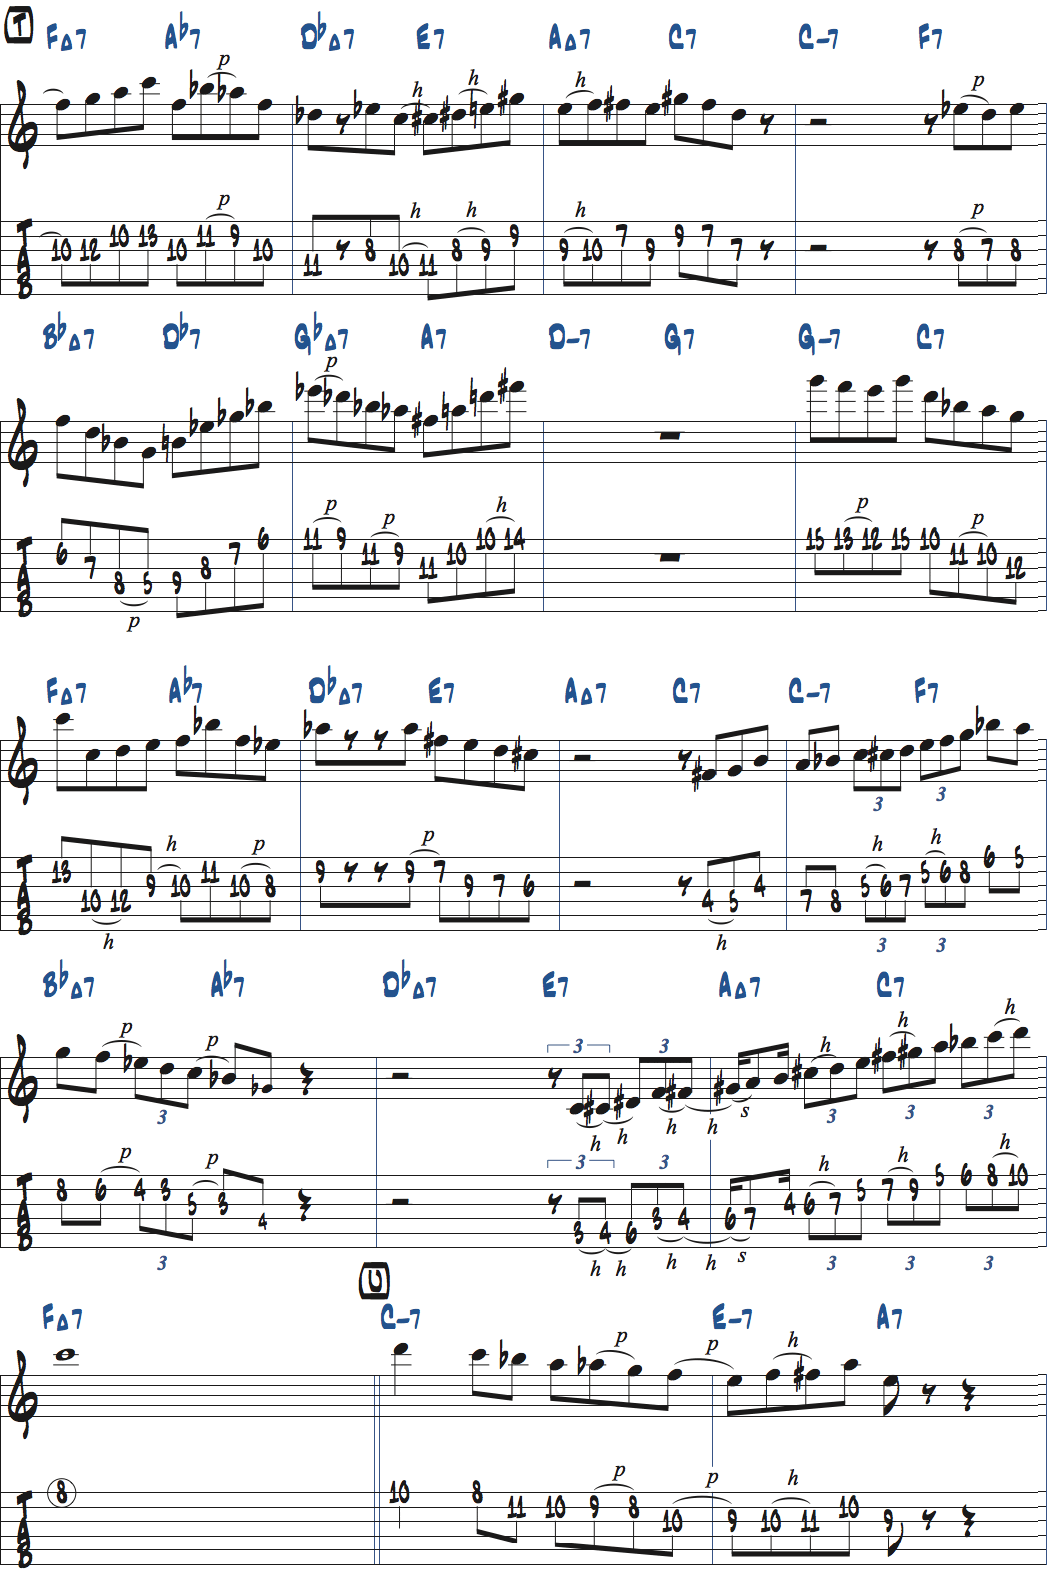 カート・ローゼンウィンケル「26-2」アドリブ6コラース目タブ譜付きギタースコア楽譜ページ1